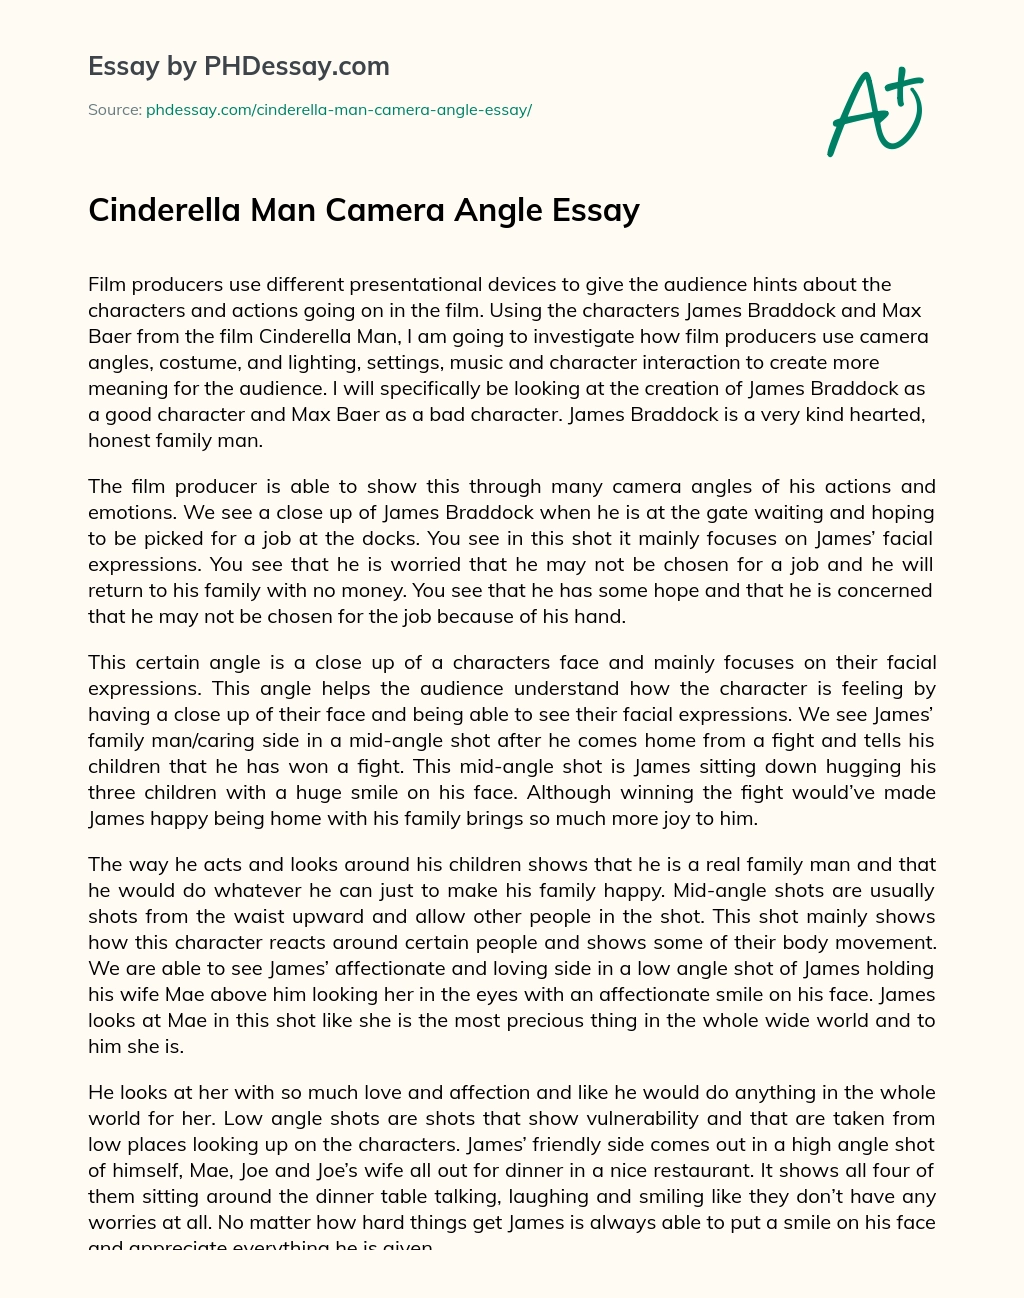 Cinderella Man Camera Angle Essay essay